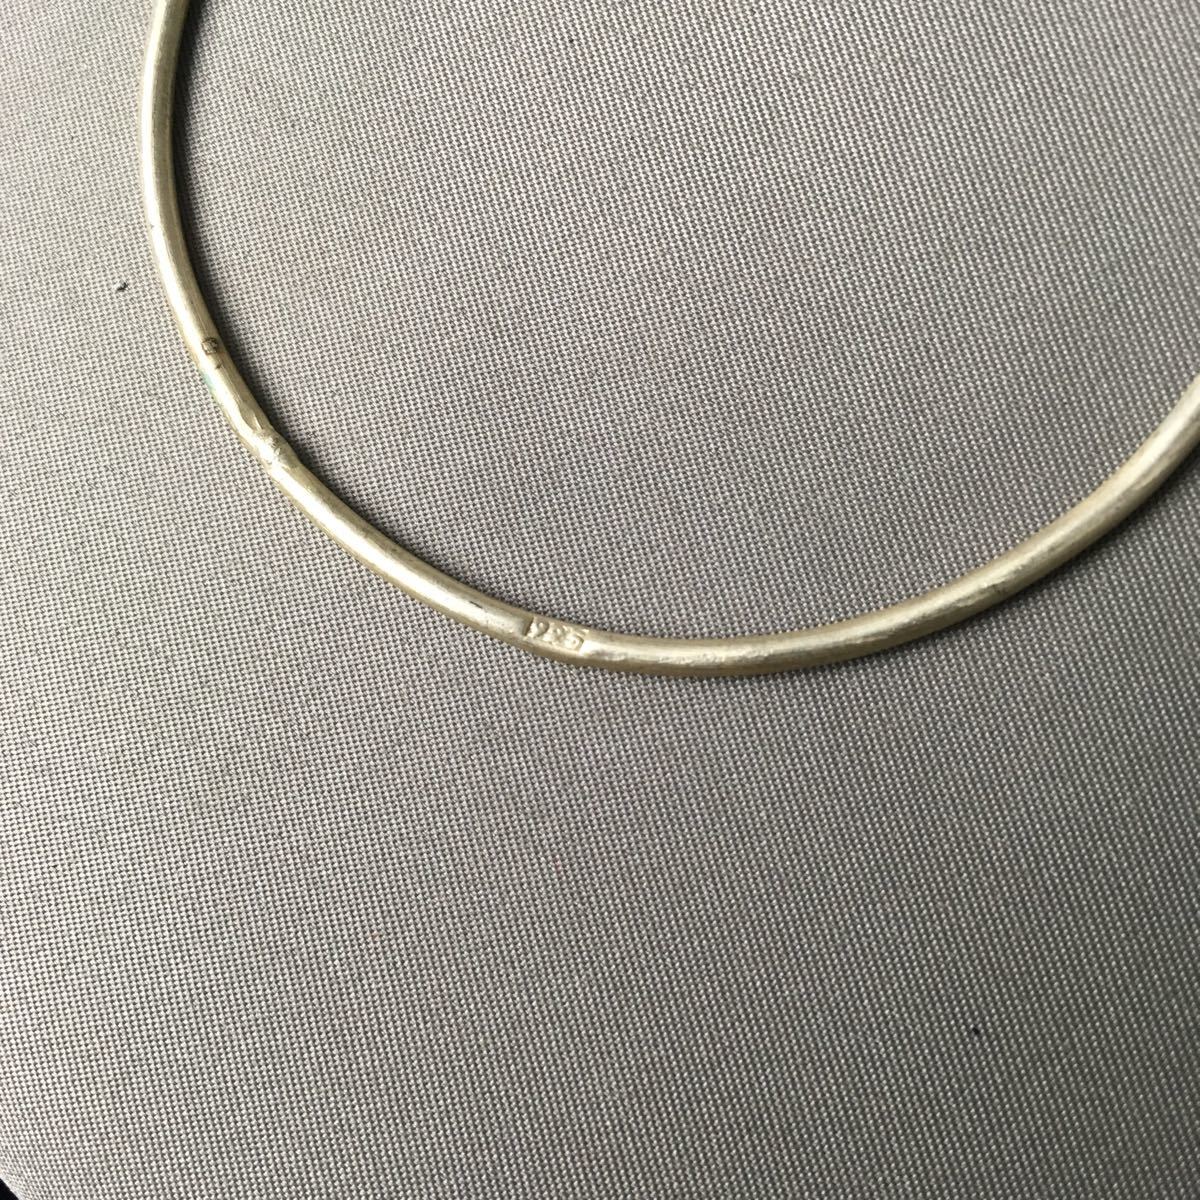 K178 silver accessory bracele 2 point set Vintage 925